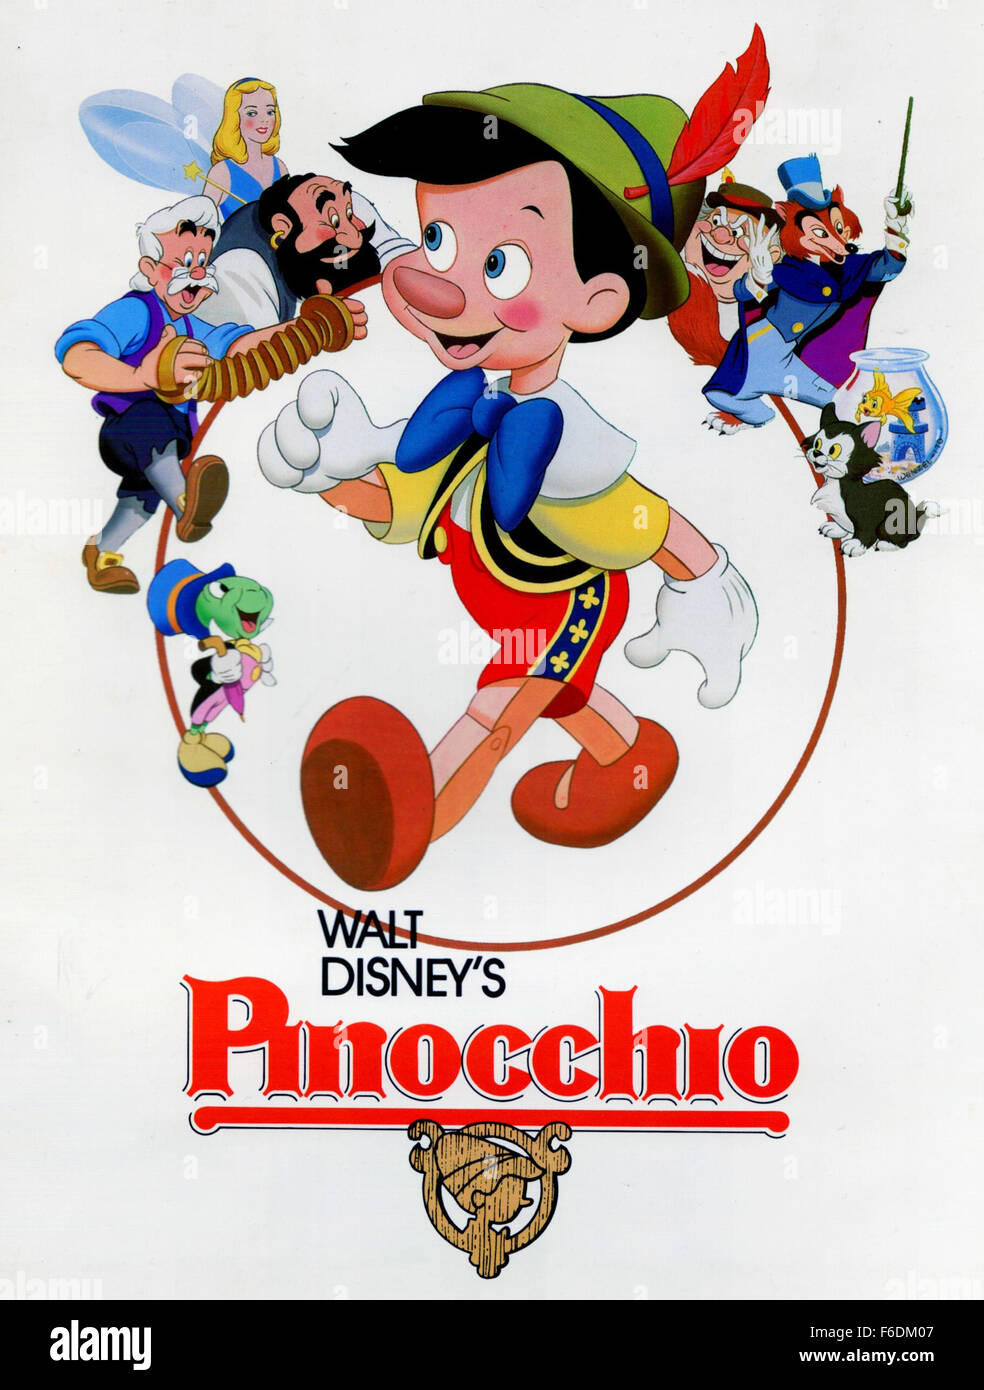 DATE DE SORTIE : 9 février 1940. Titre du film : Pinocchio. STUDIO : Walt  Disney Productions. PLOT : Inventeur Gepetto crée une marionnette en bois  appelé Pinocchio. Son souhait qu'un vrai